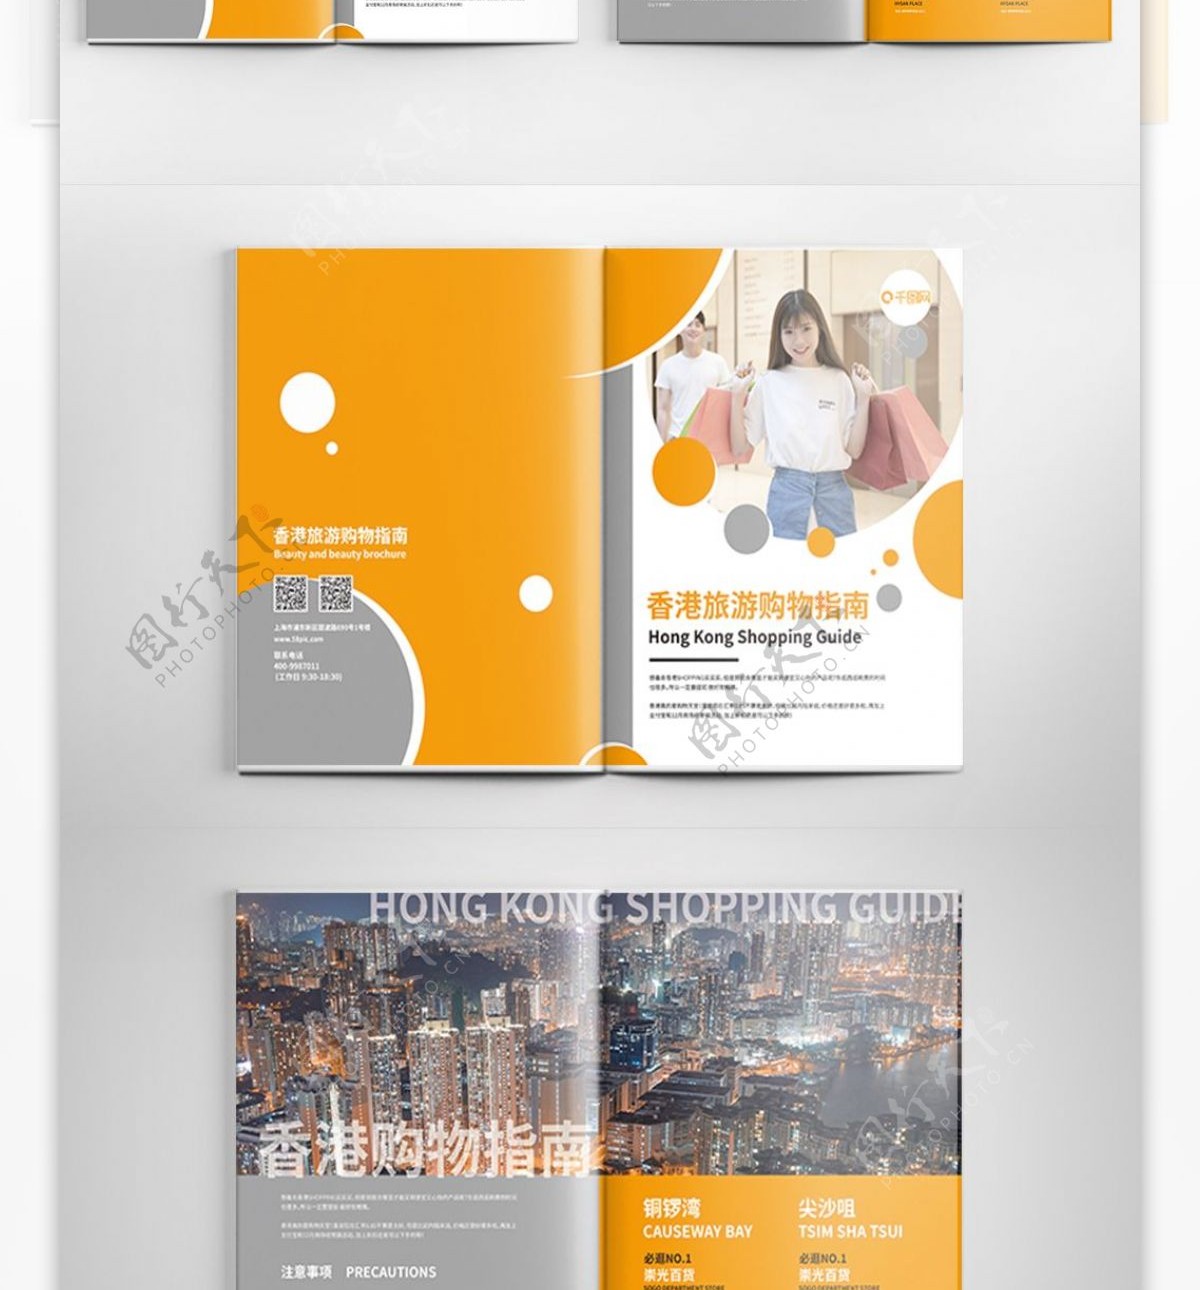 香港购物旅游指南宣传画册模板